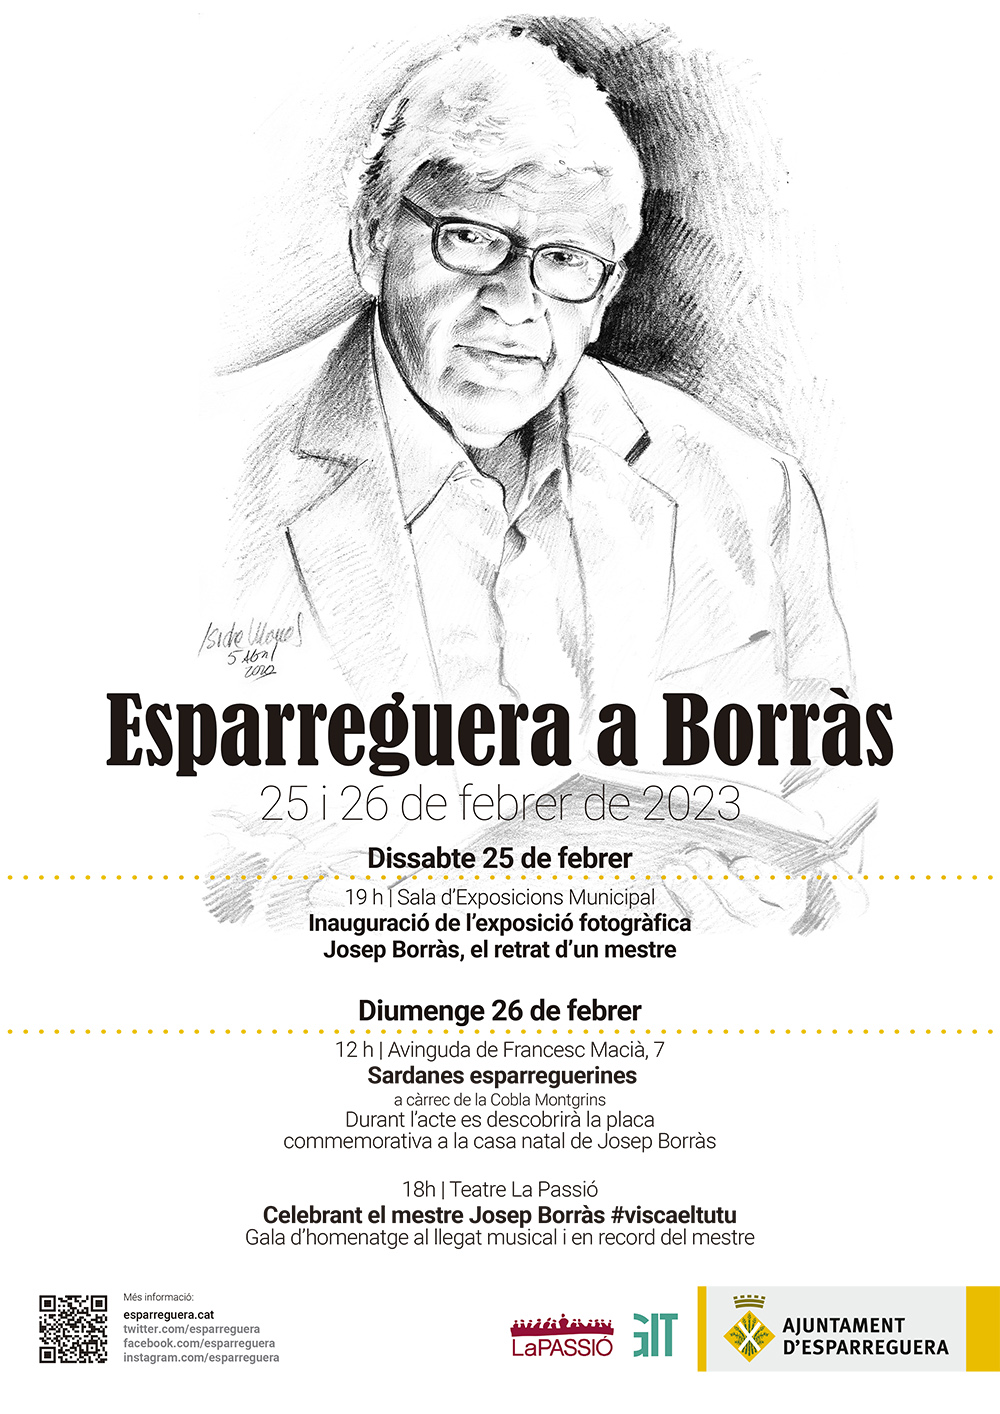 La Bustia cartell Esparreguera a Borras